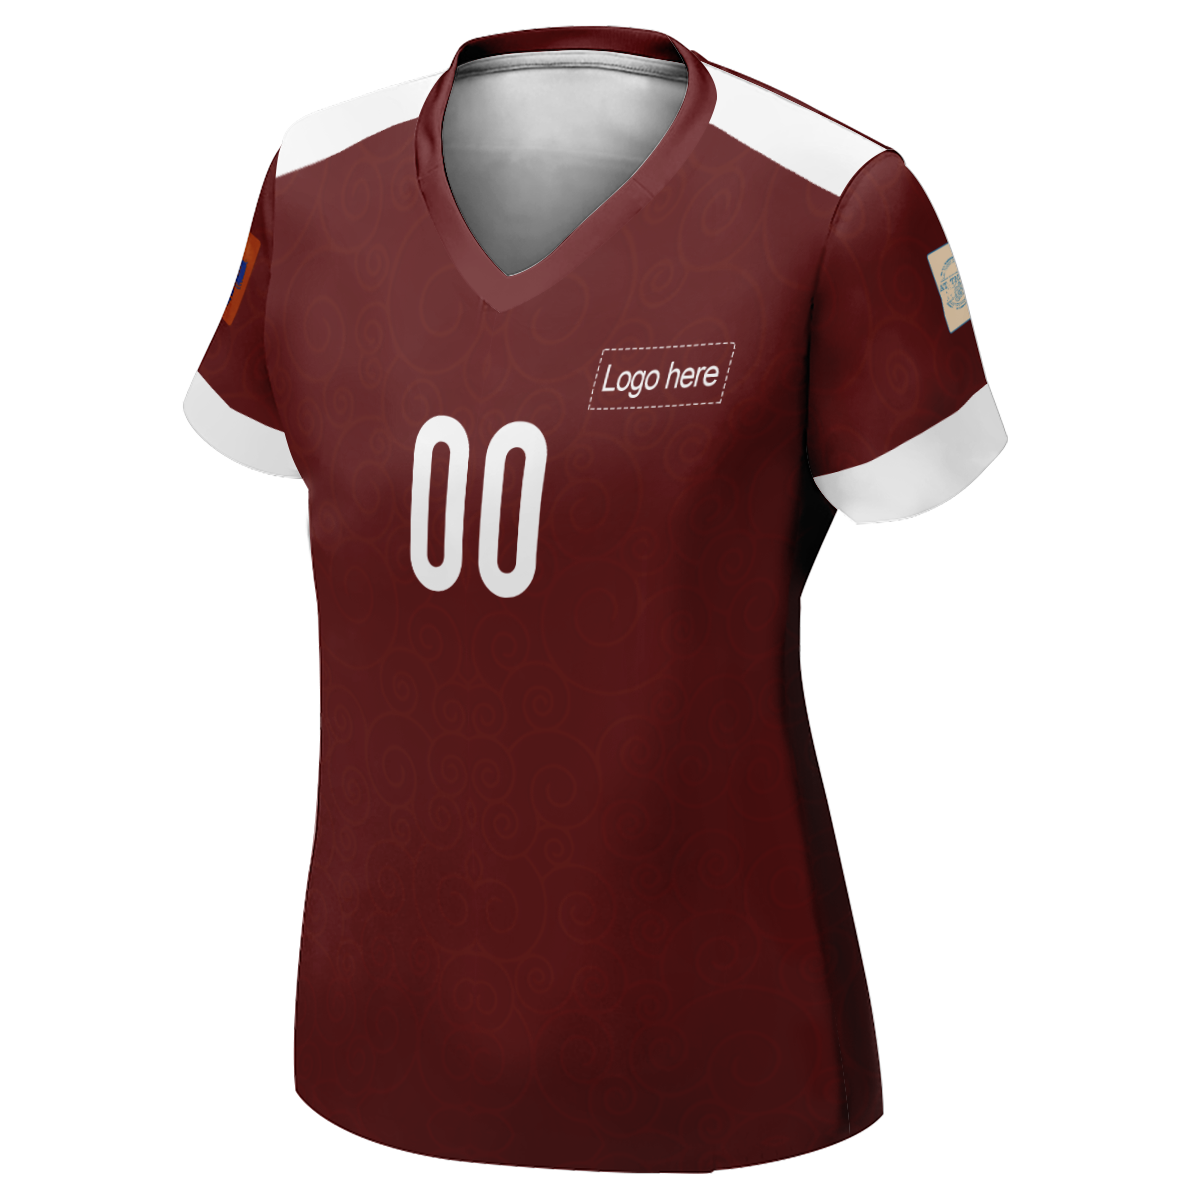 그림이 있는 여자 플란넬 카타르 월드컵 맞춤형 축구 유니폼